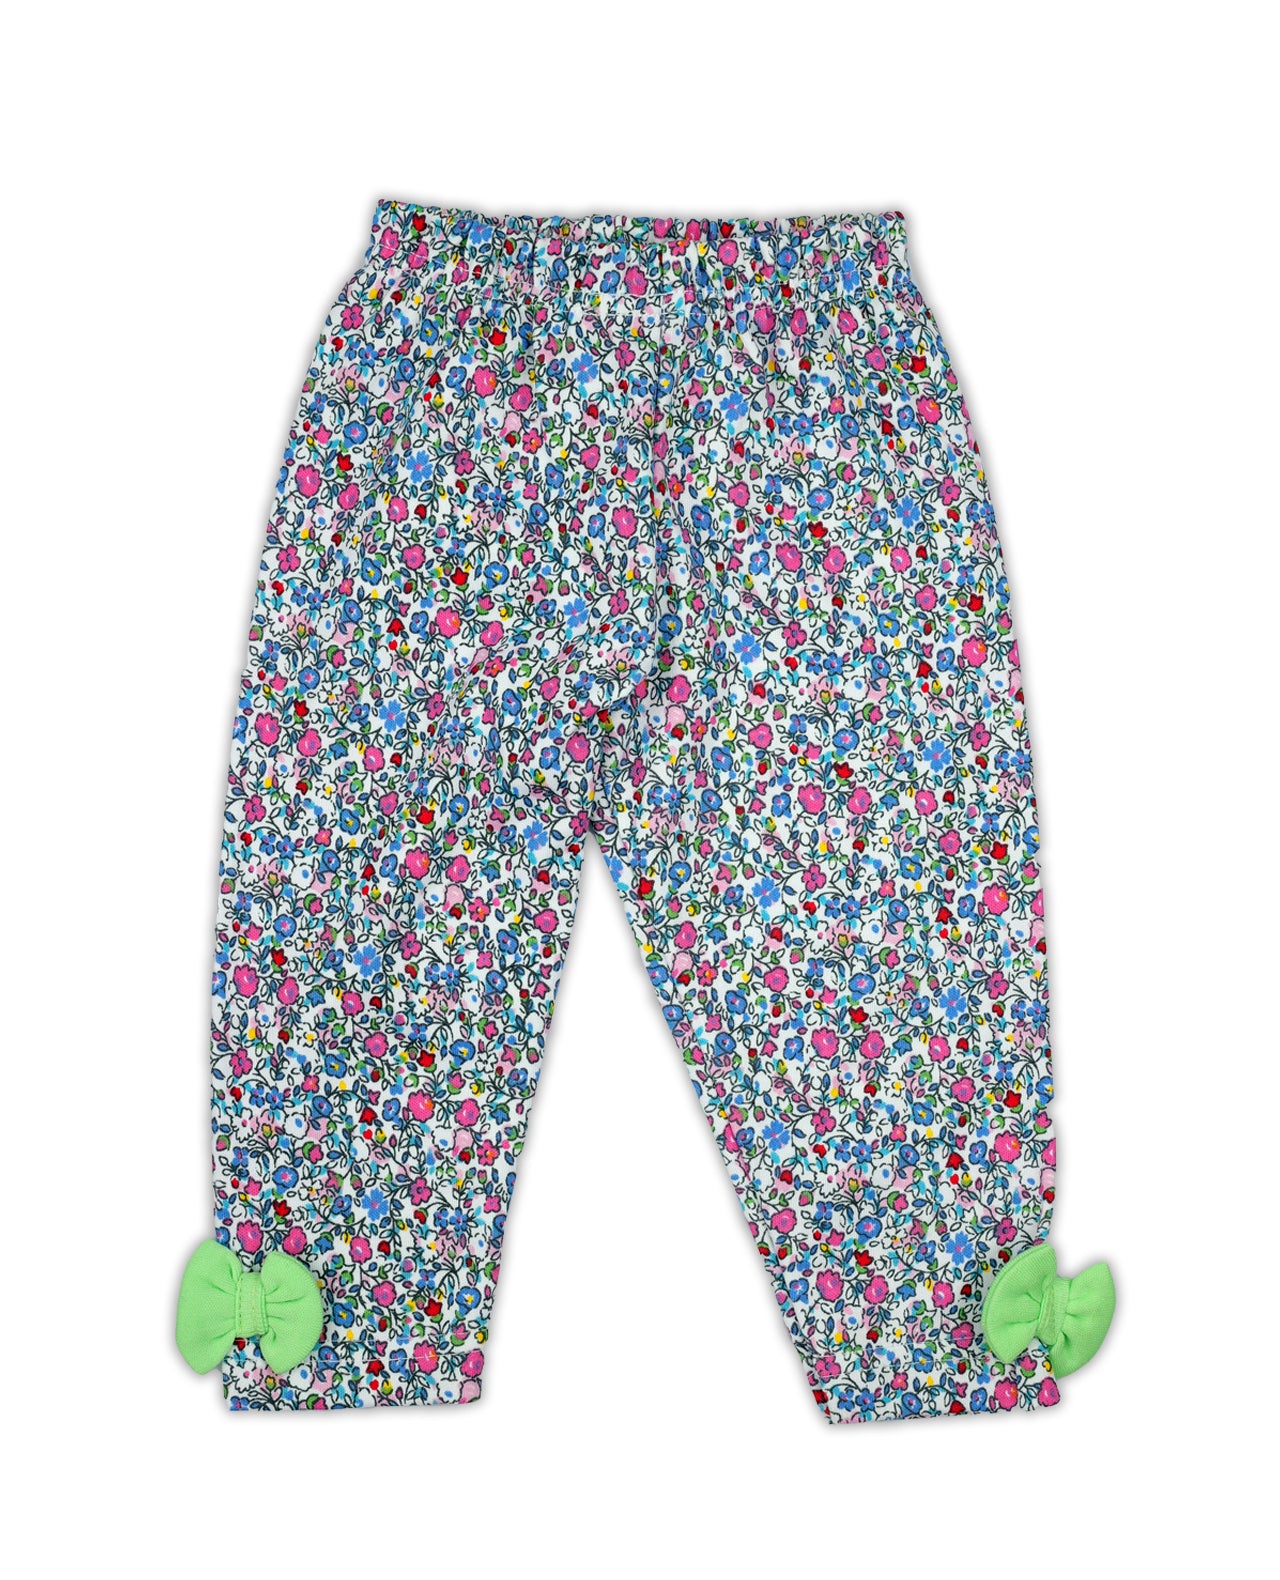 
                  
                    Cotton Baby Girls Printed Long Pant Pyjamas Set
                  
                